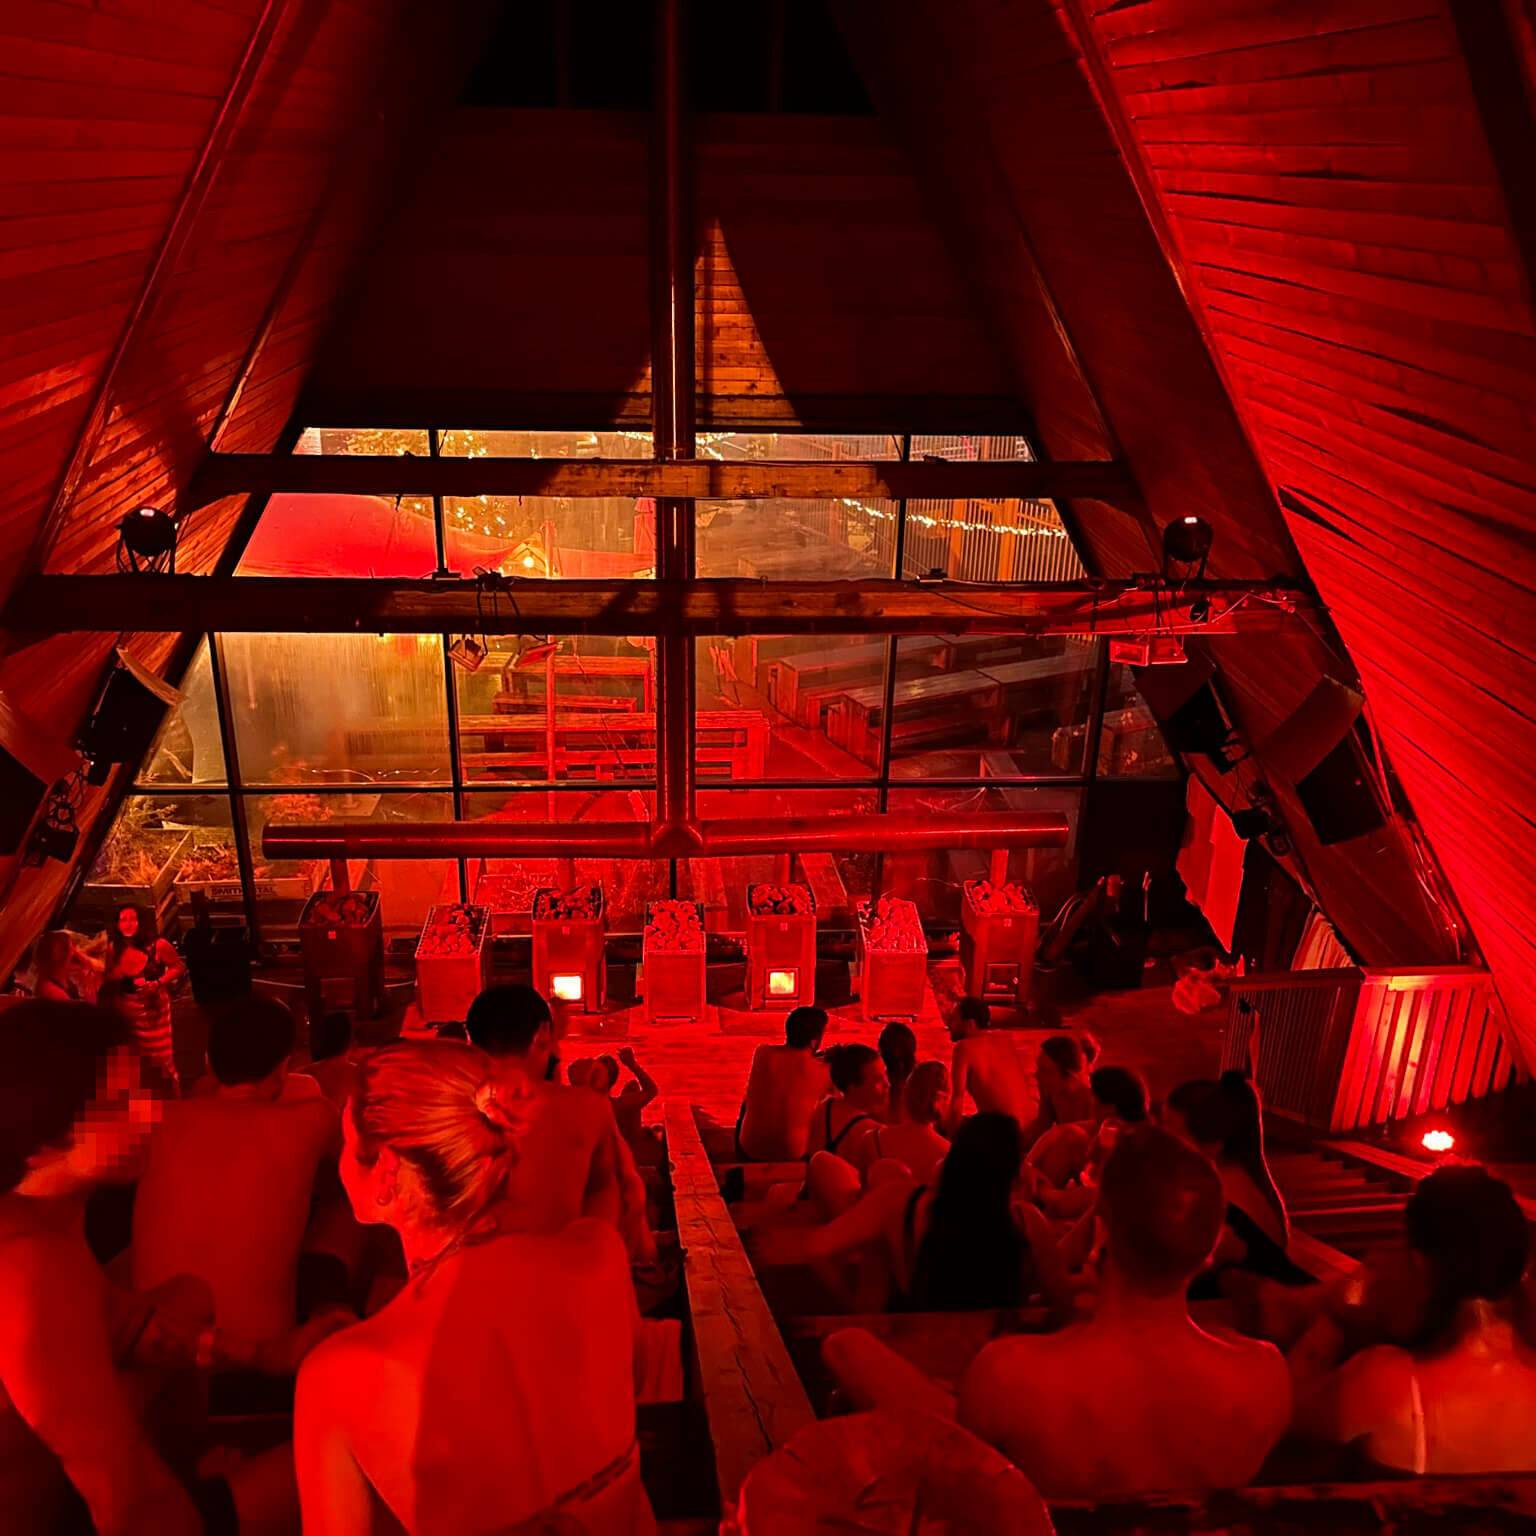 Die große Sauna auf dem Salt-Gelände in Oslo ist ein echter Geheimtipp.